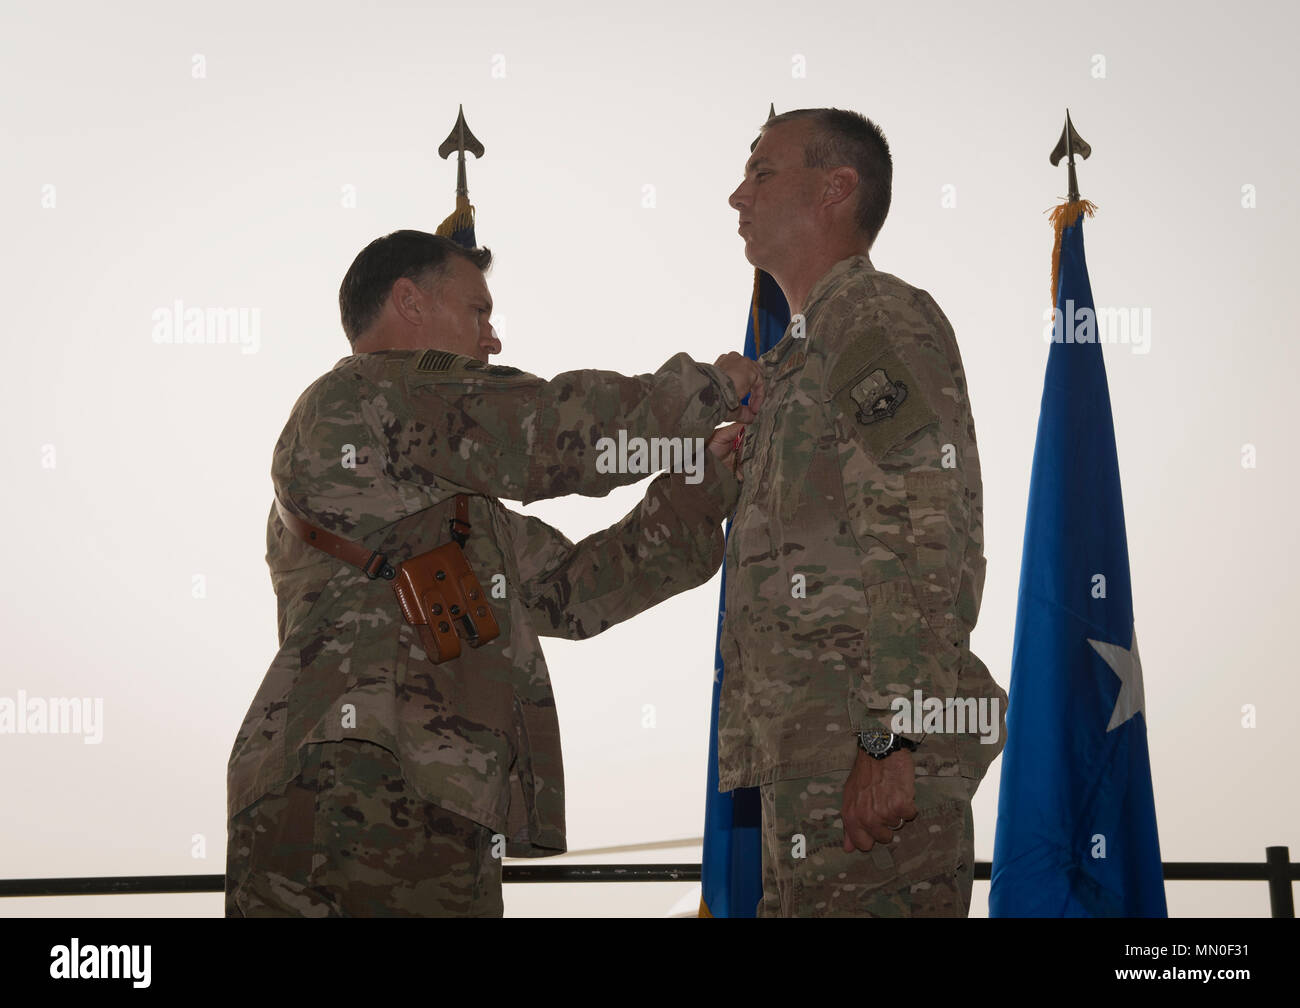 Col. Craig Lucey, el grupo expedicionario de aire 451saliente comandante, recibe la Medalla de Estrella de Bronce de Brig. Gen. Craig Baker, el comandante de ala expedicionaria aérea 455a, durante la 451ª AEG ceremonia de cambio de mando en el Aeródromo de Kandahar, Afganistán, Agosto 2, 2017. Lucey ordenó la 451ª AEG durante los últimos 12 meses. Durante su tiempo como comandante, lideró a los aviadores y civiles de cuatro escuadrones y logró el segundo mayor aeródromo en Afganistán. (Ee.Uu. Foto de la fuerza aérea por el Sargento. Benjamin Gonsier) Foto de stock